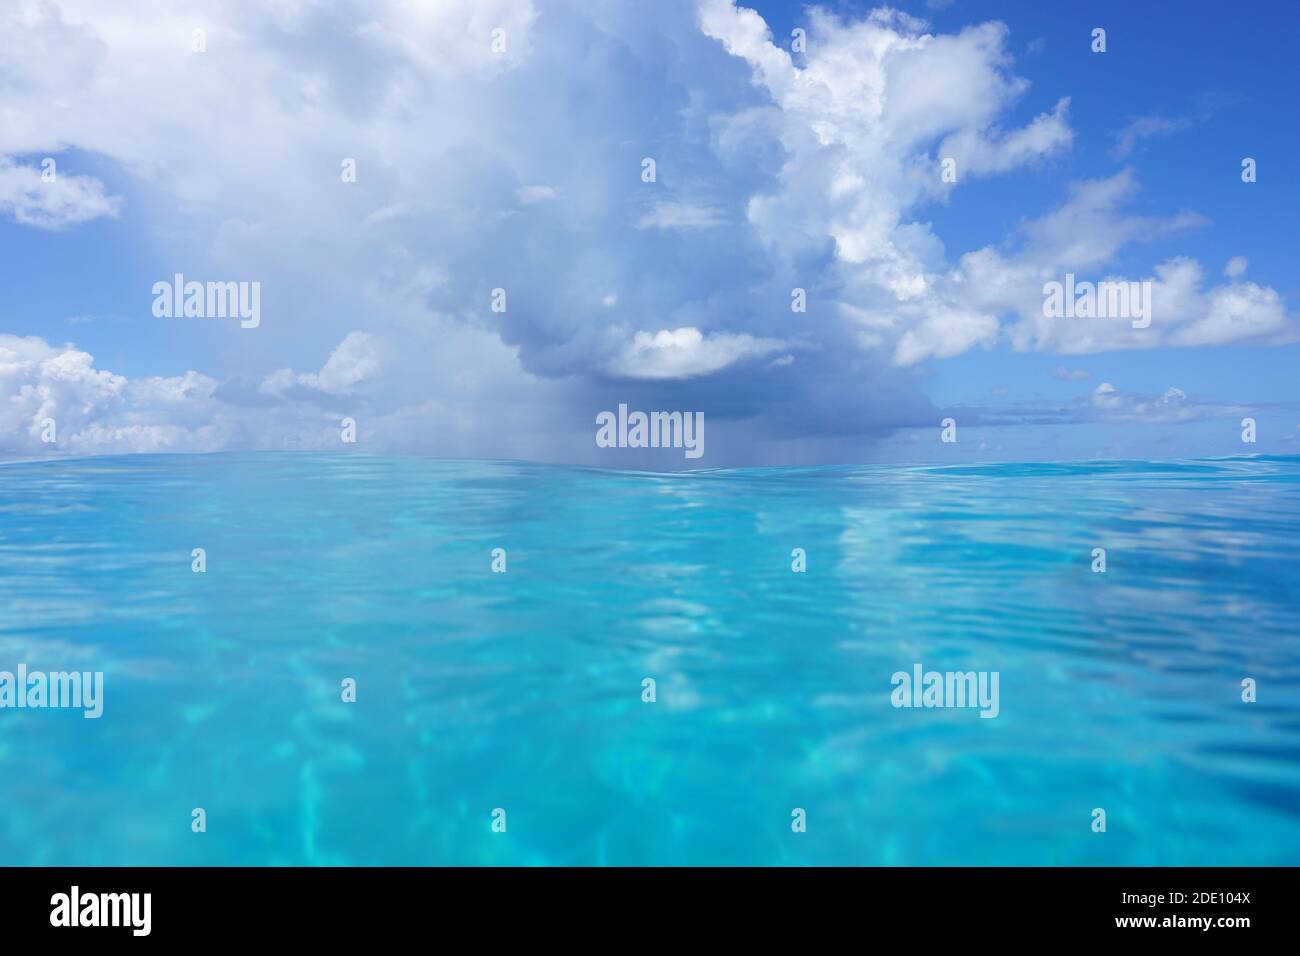 Fond marin, ciel bleu avec nuage sur l'océan, vue de la surface de l'eau, scène naturelle, océan Pacifique sud Banque D'Images